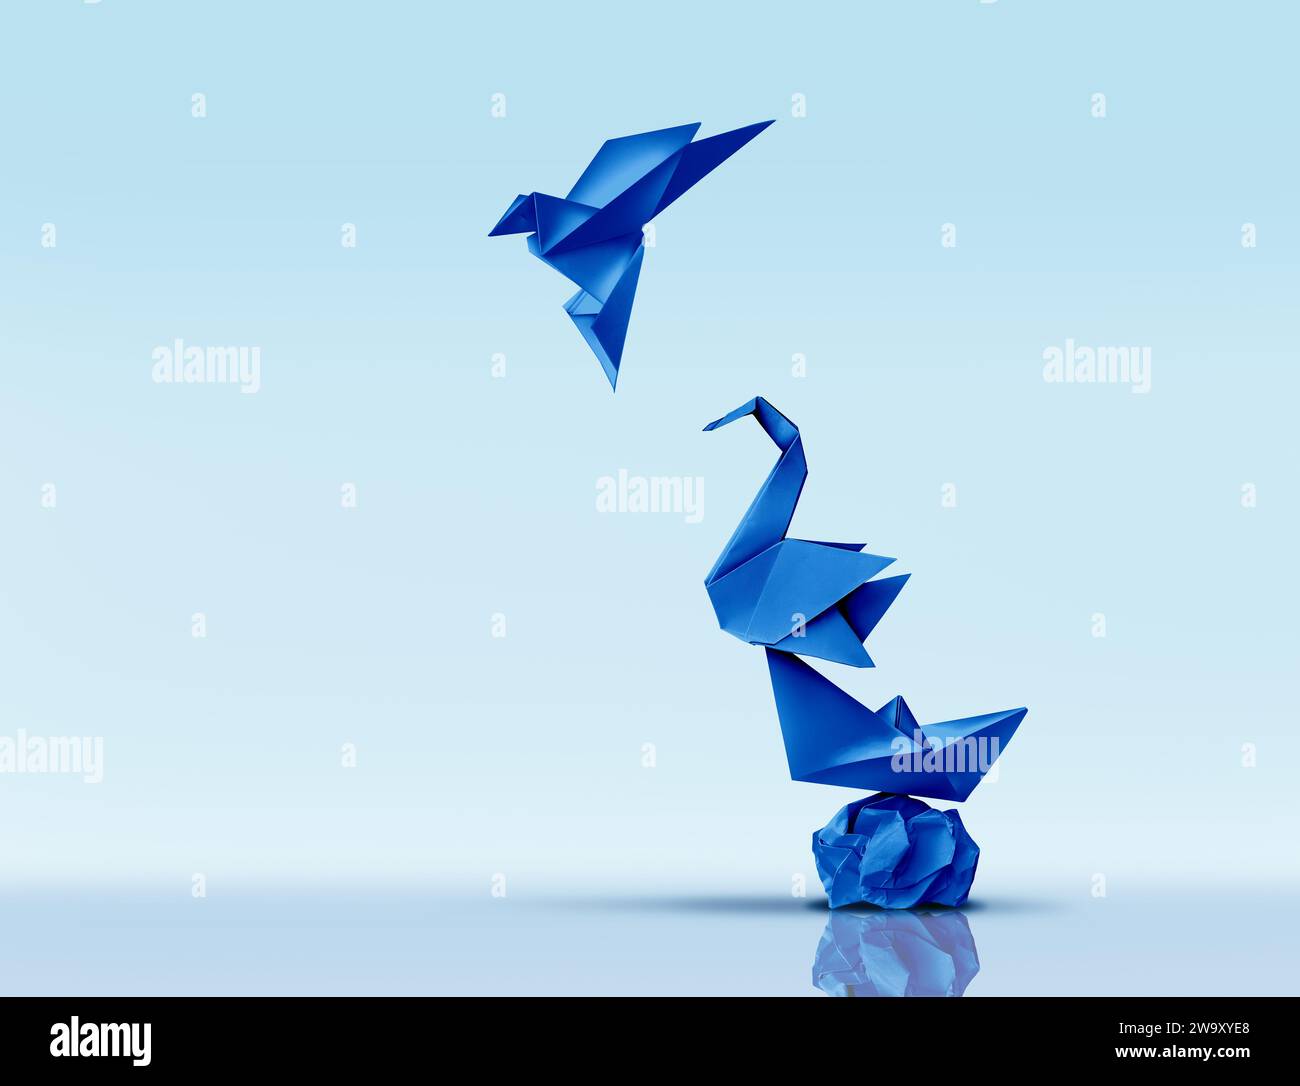 Aspirare alla grandezza e perseguire l'eccellenza o scalare il concetto più alto e avanzare verso nuove altezze metafora come sculture di carta origami blu come SY Foto Stock